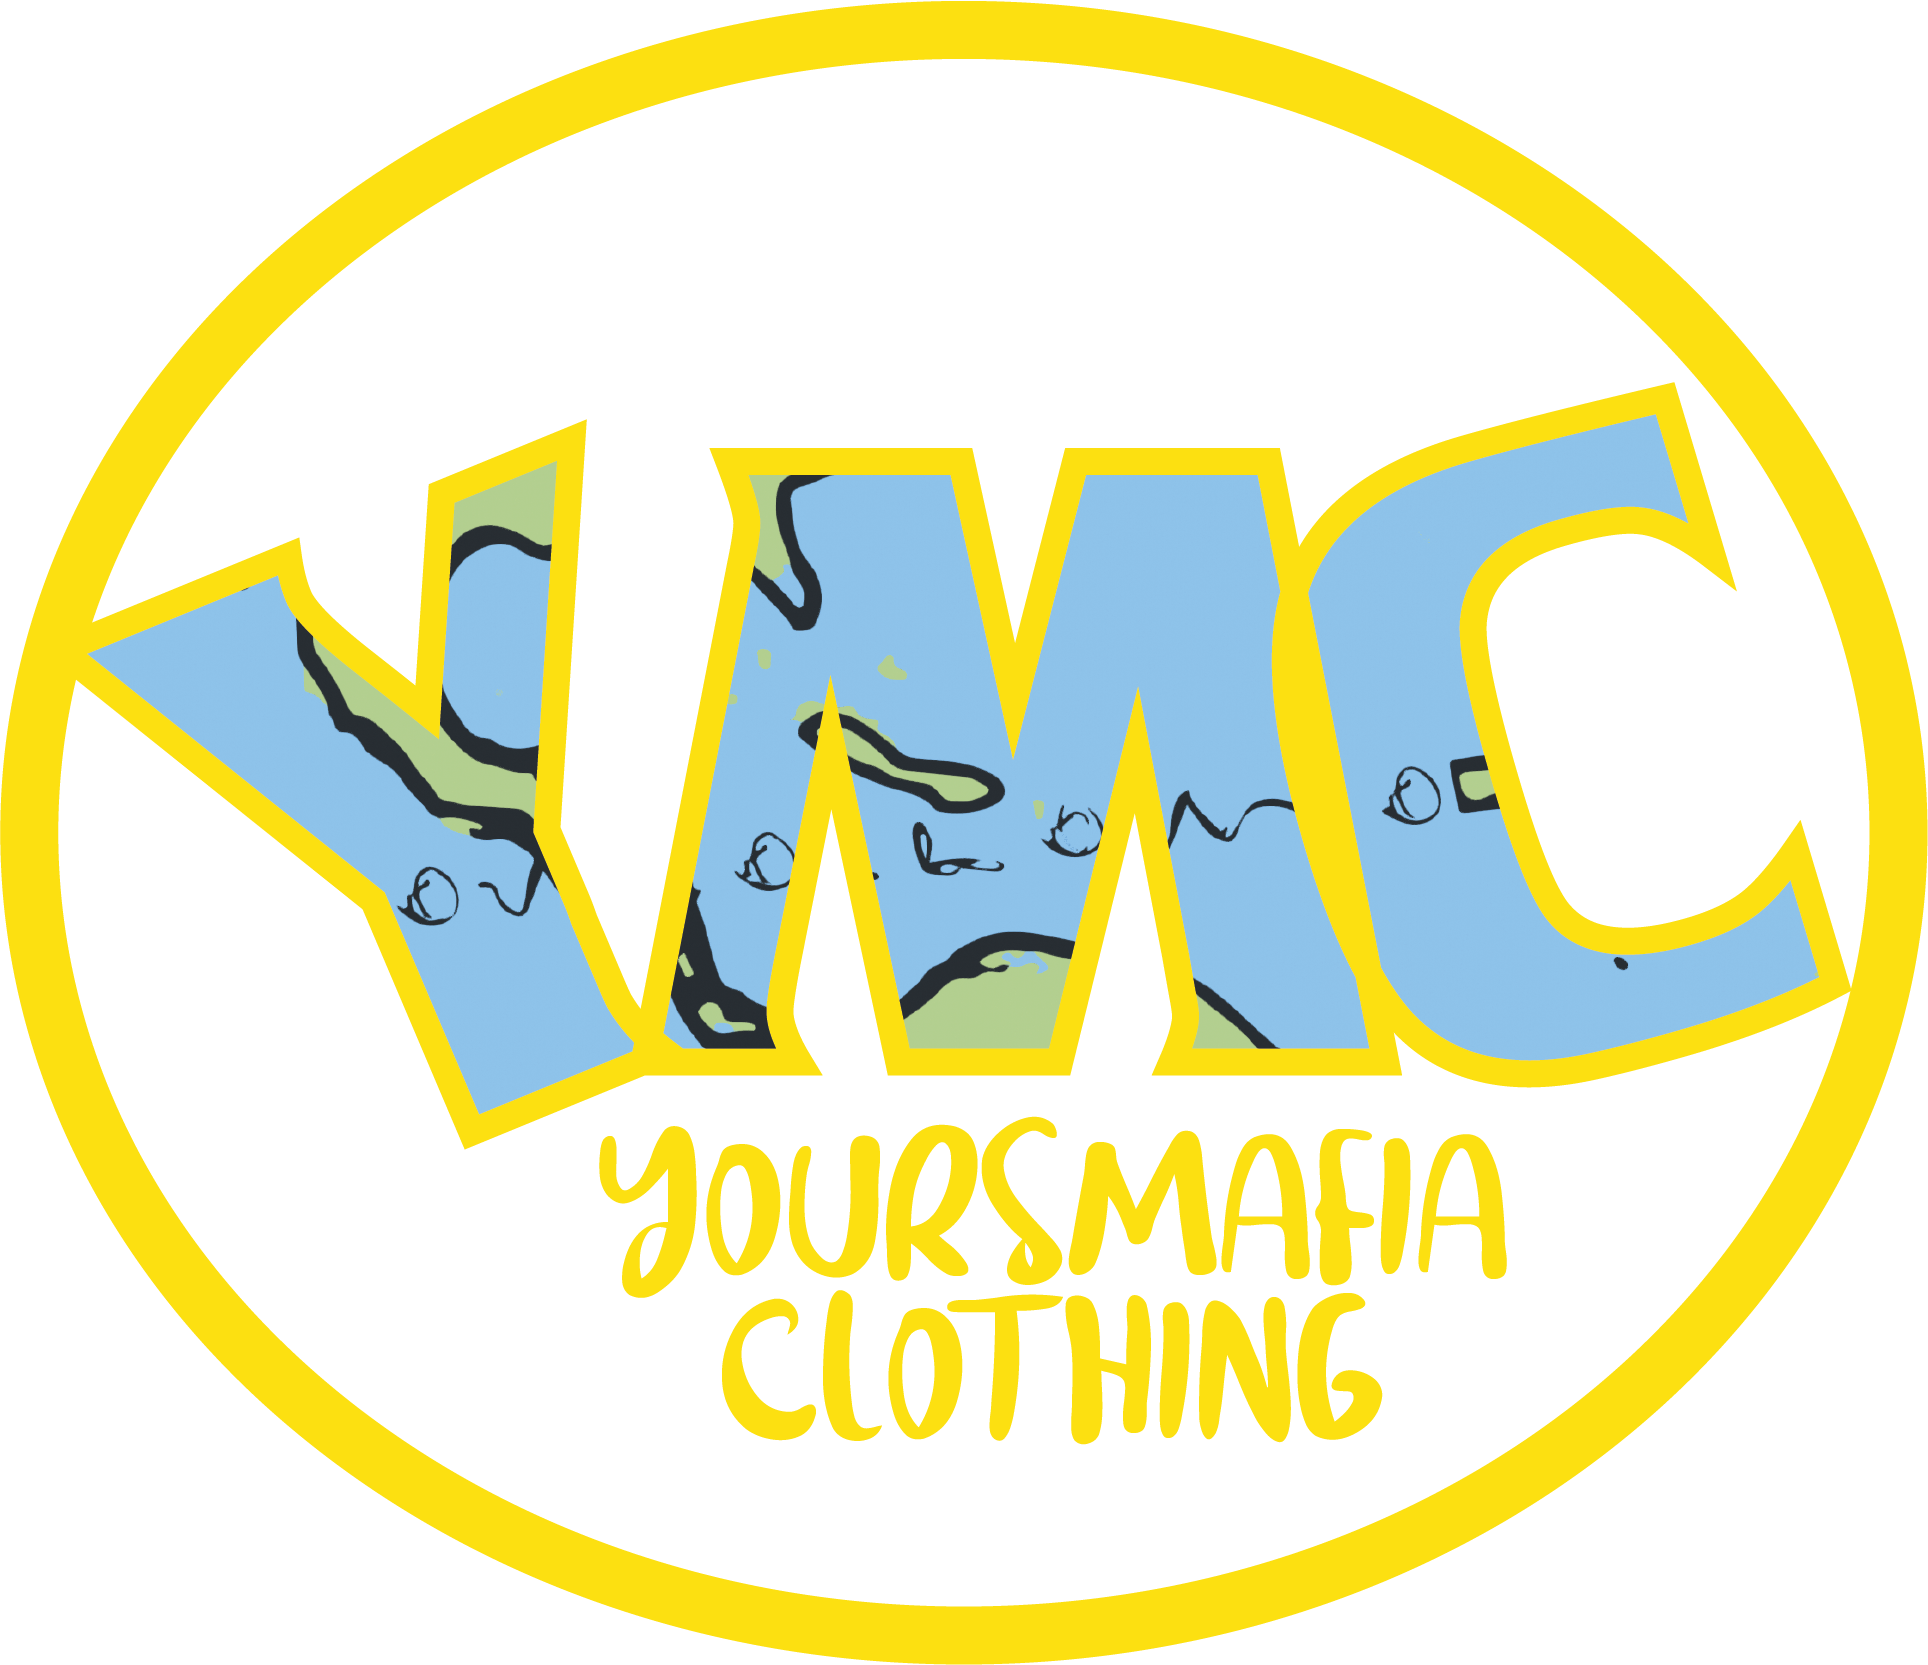 yoursmafia clothing